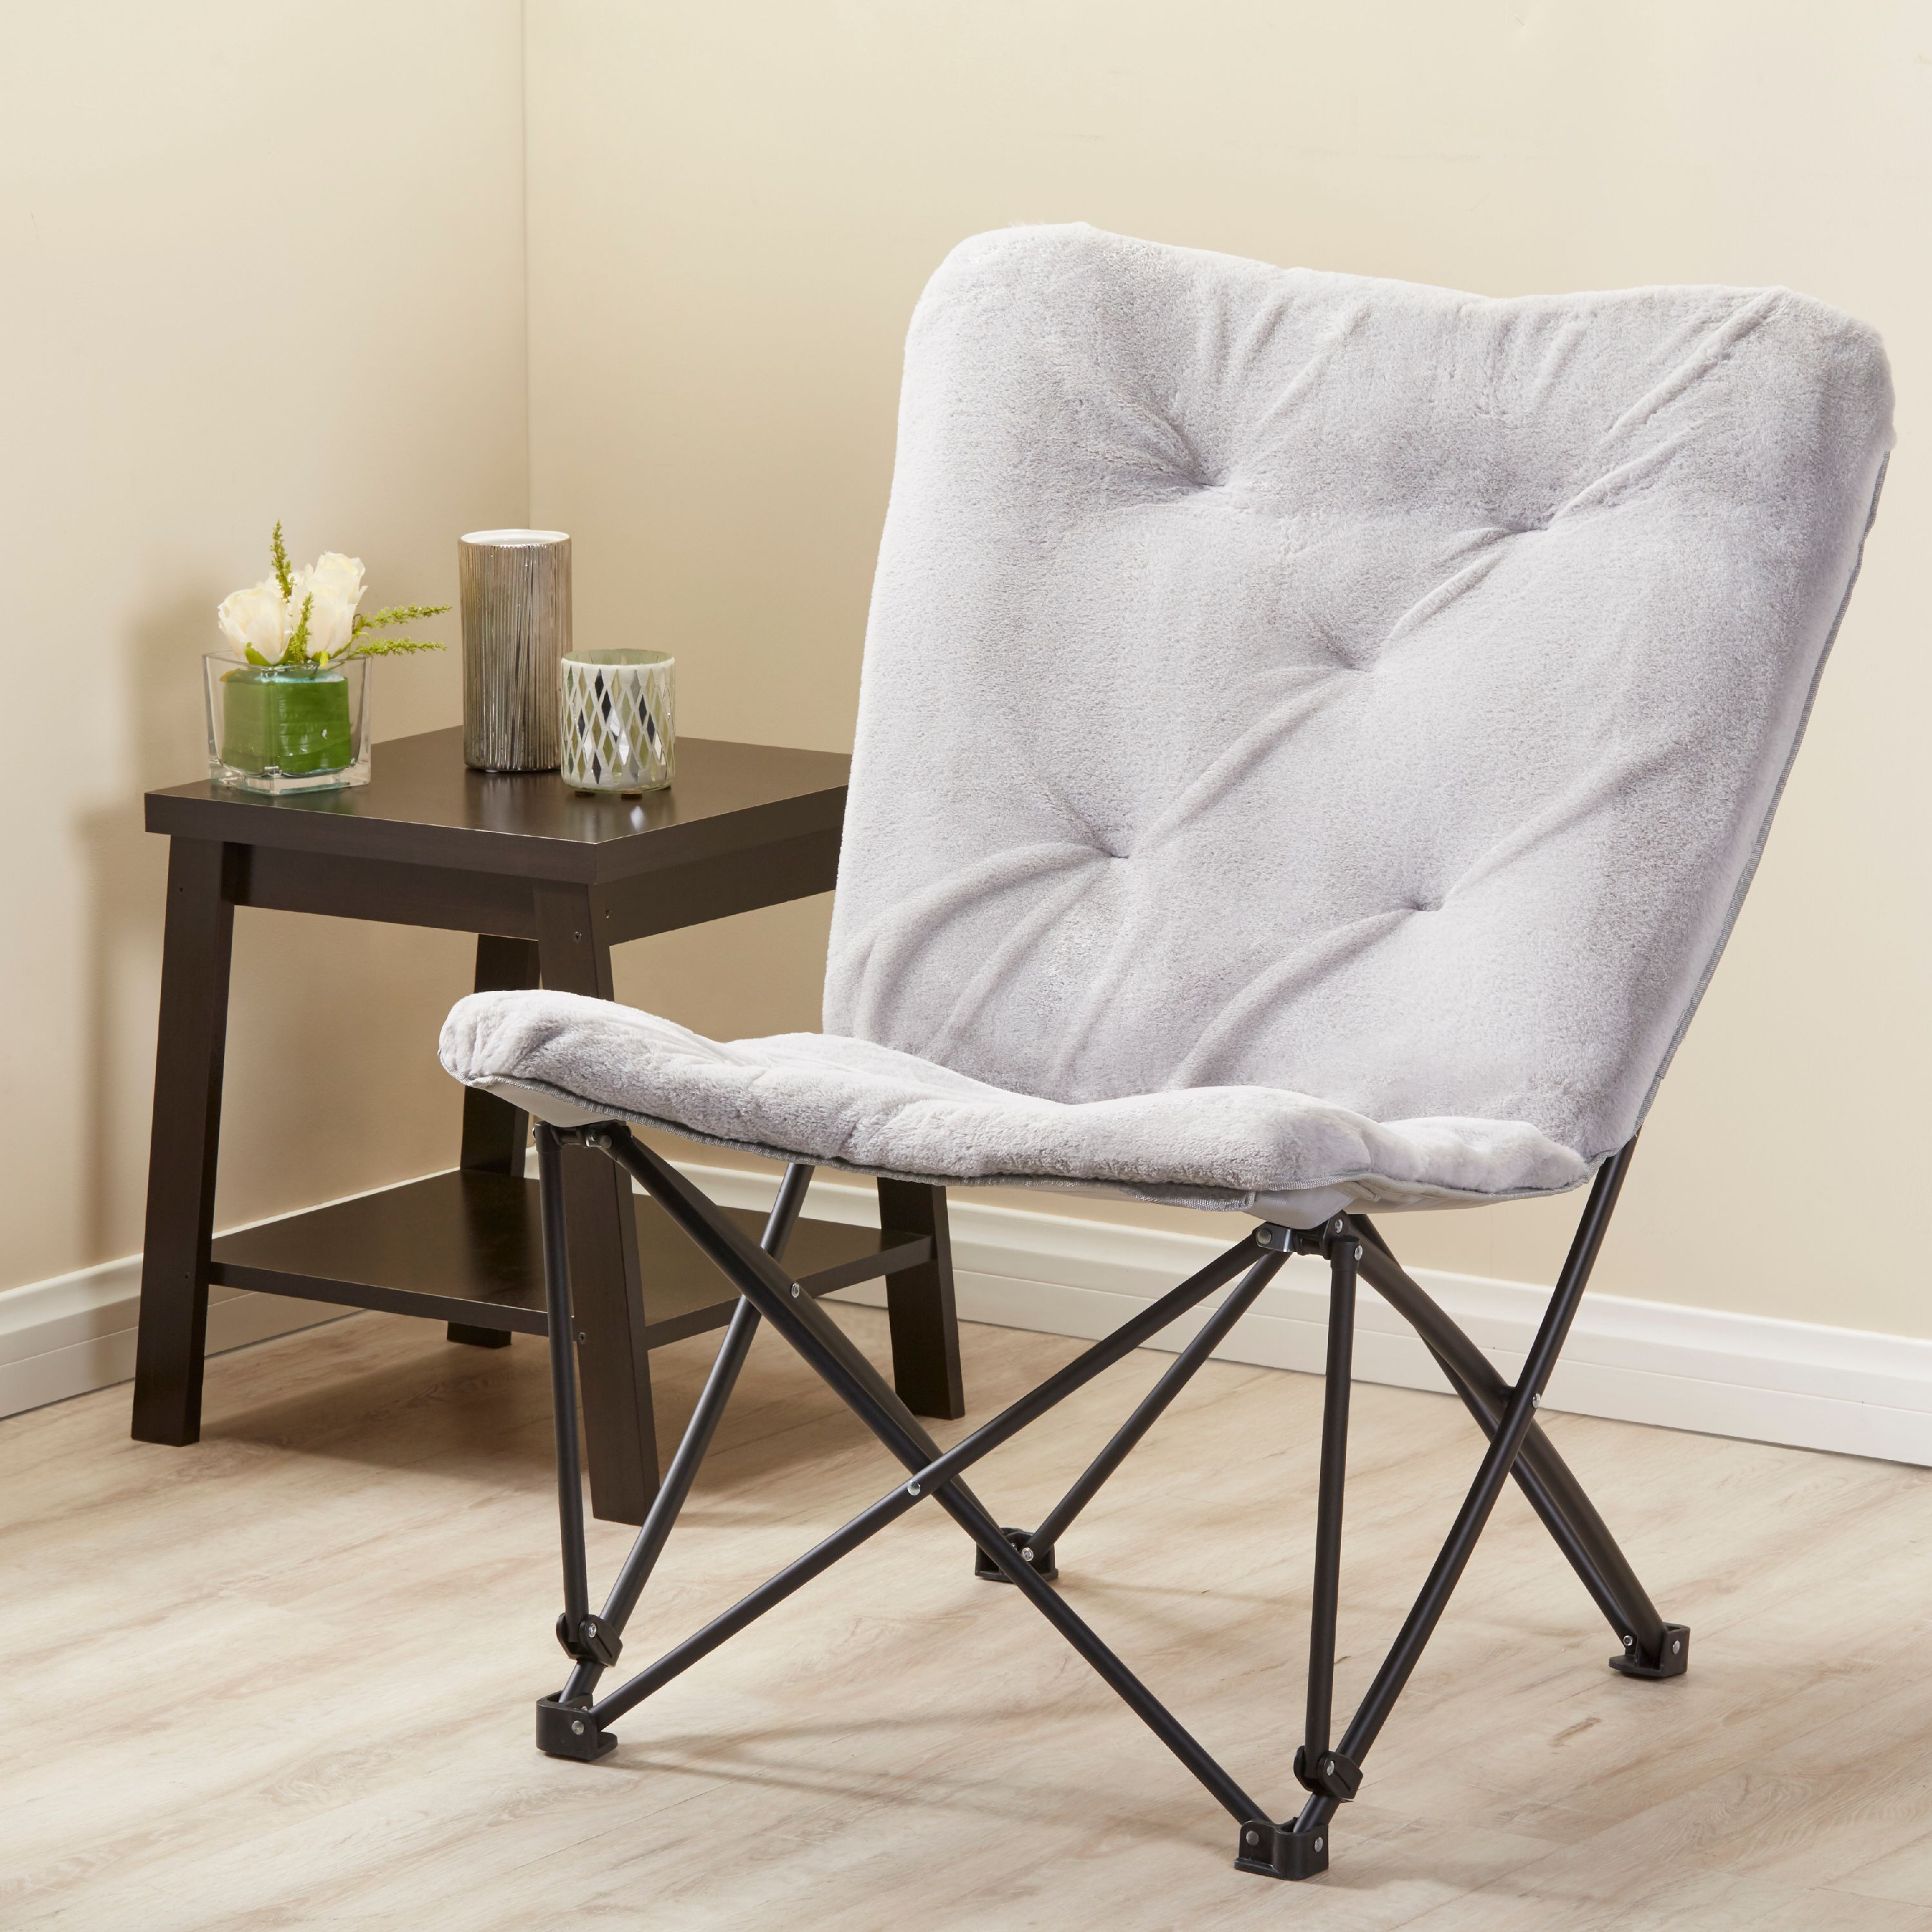 Mainstays Memory Foam Folding Butterfly Lounge Chair – Just $14.92 (reg $35)!